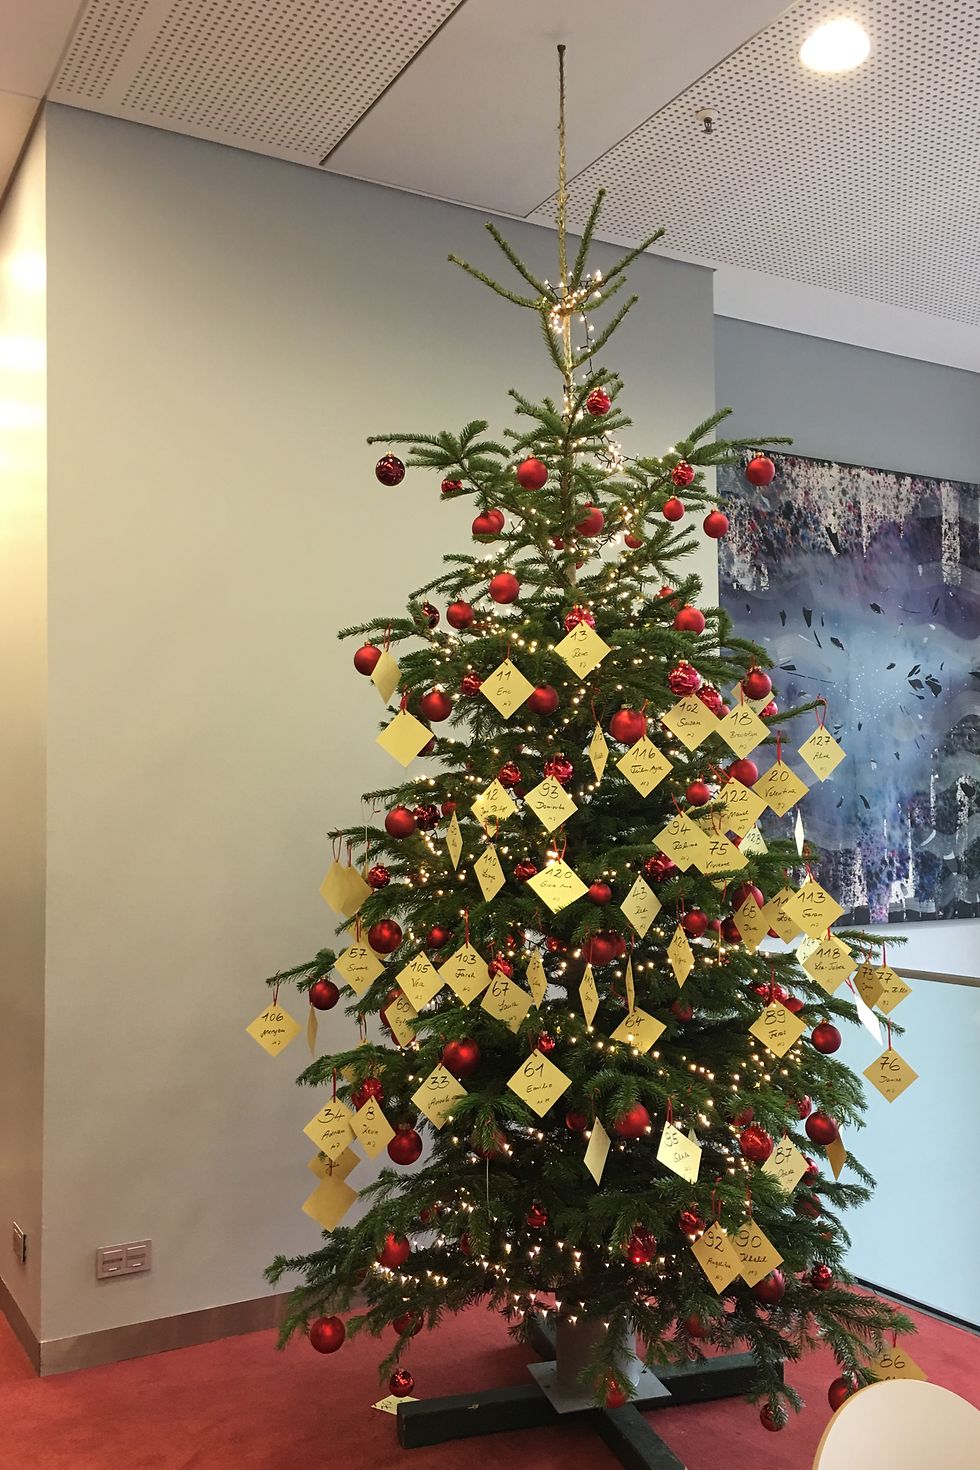 
Die Weihnachtsbäume inklusive Wunschzettel findet man in den Mitarbeiterkantinen am Henkel-Firmensitz in Düsseldorf.